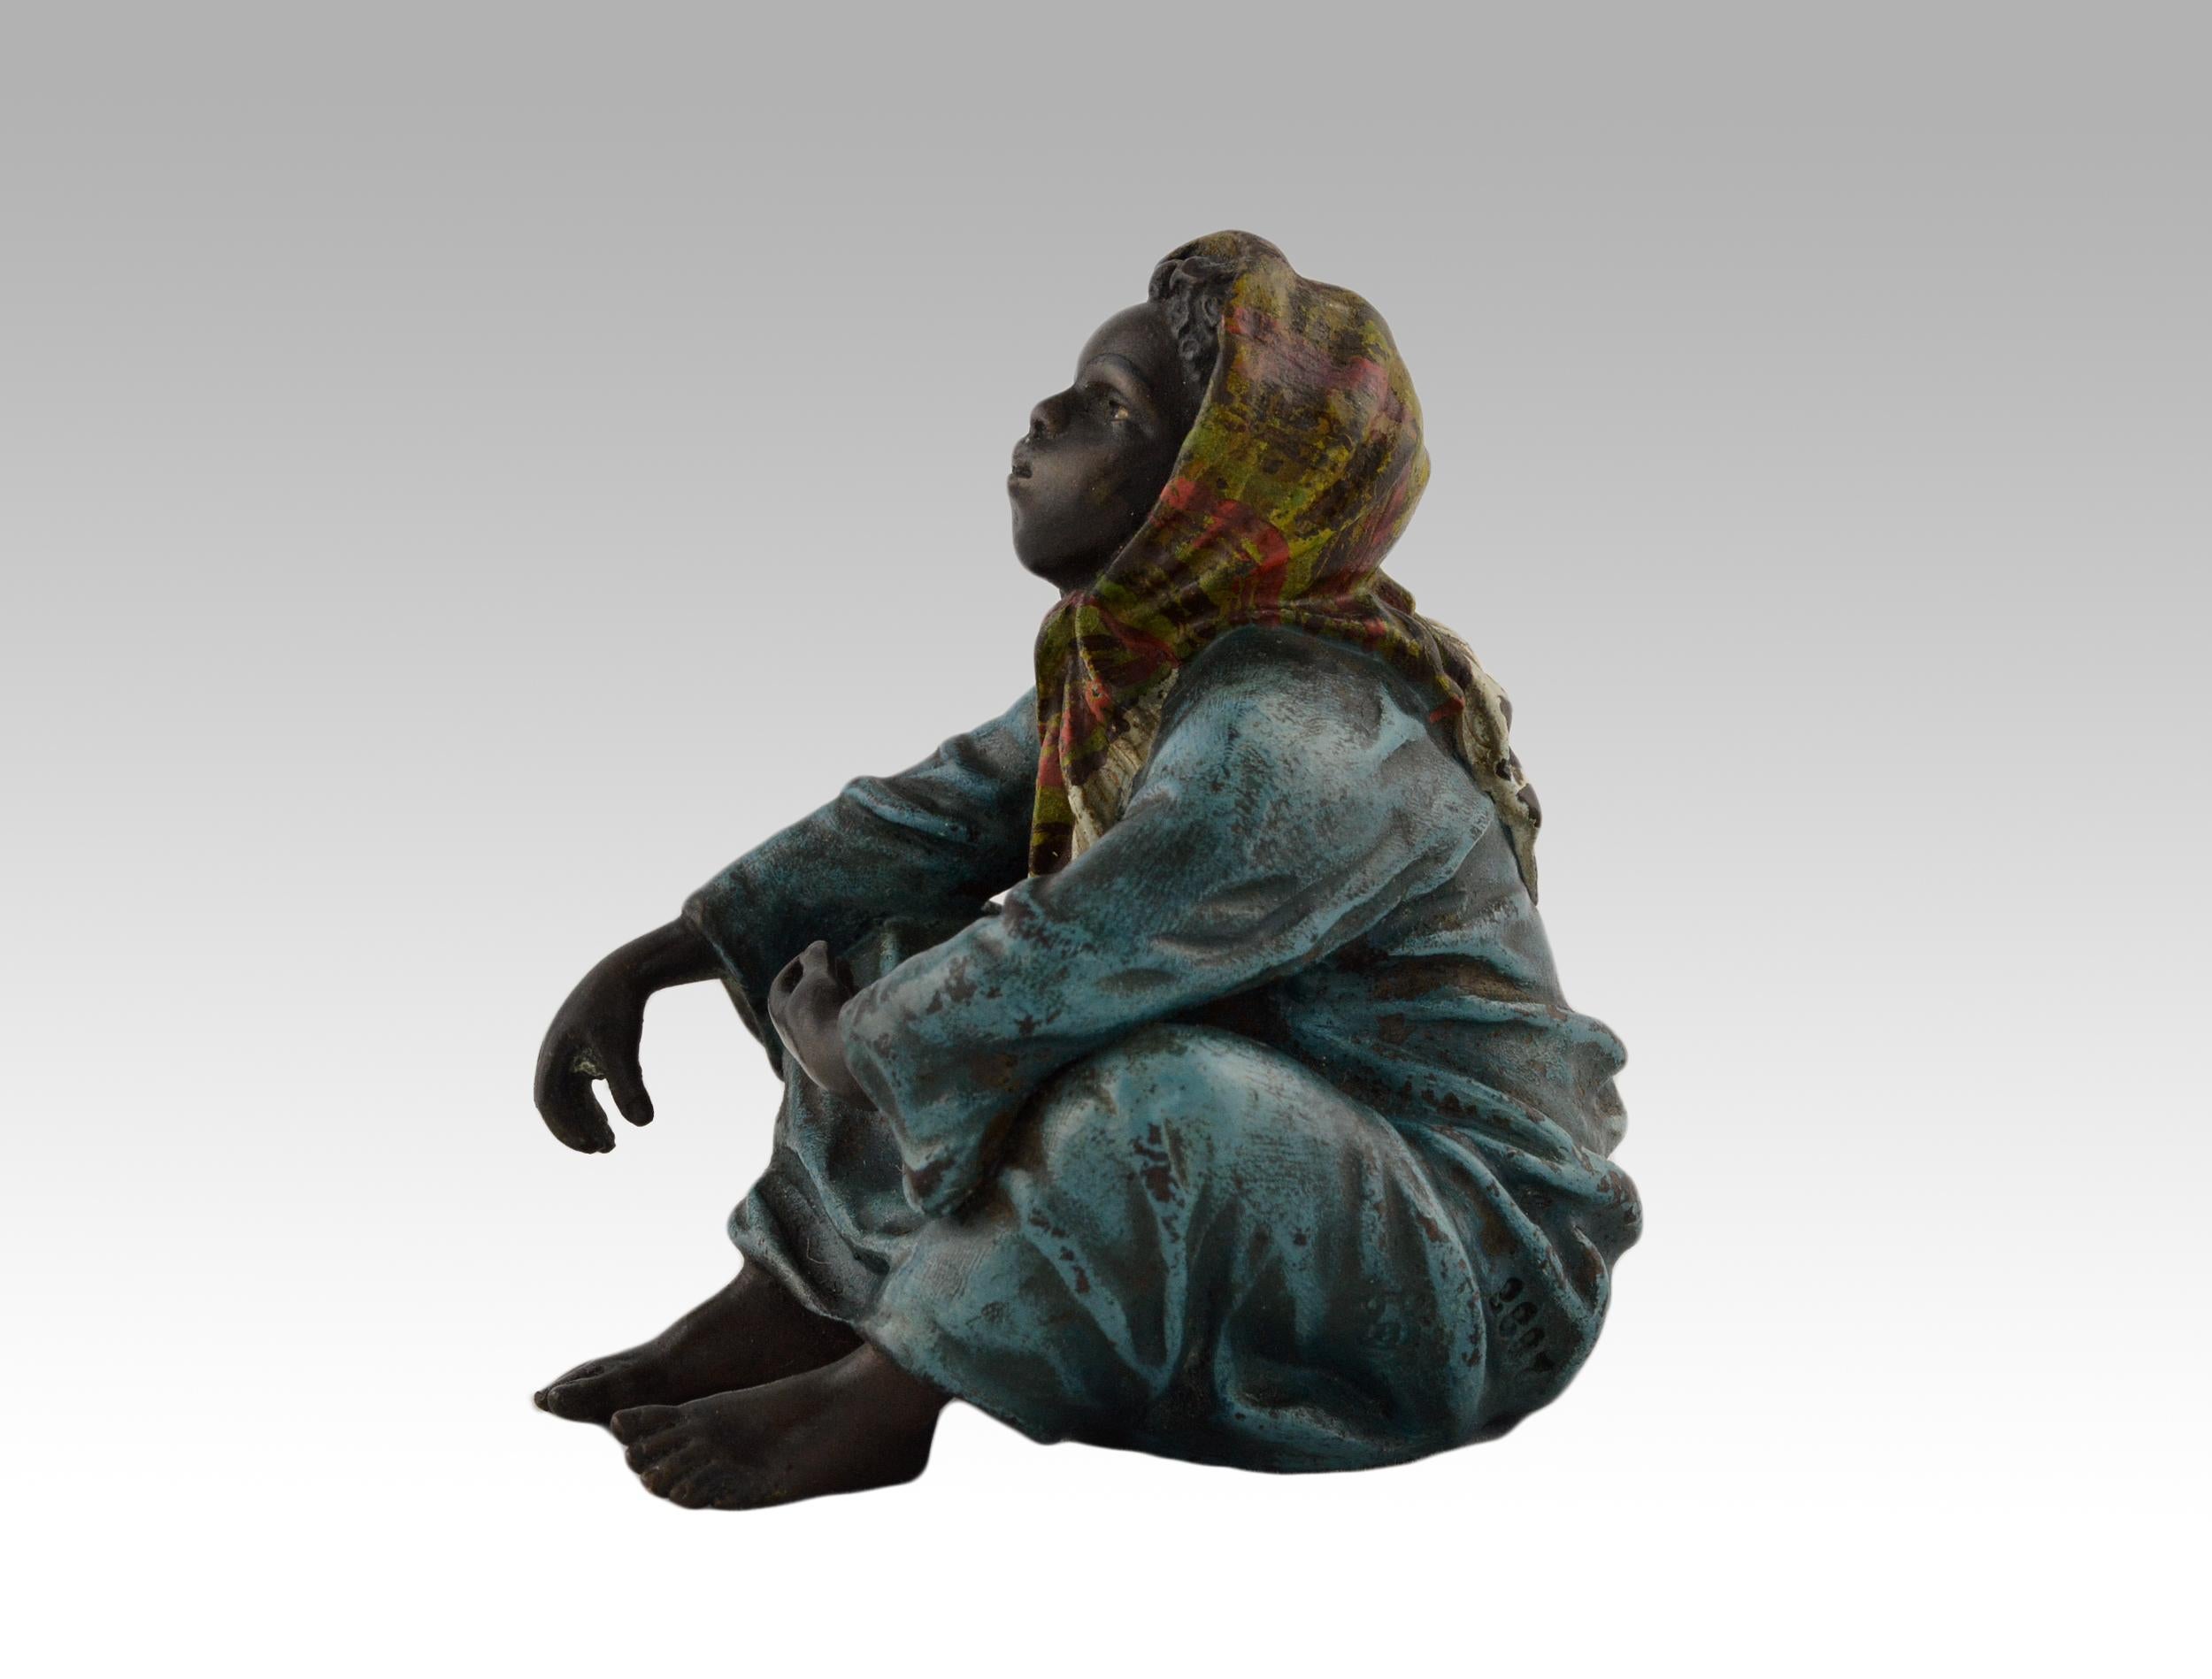 19th Century cold painted Austrian bronze sculpture of an Arab girl  - Sculpture by Franz Xaver Bergman (Bergmann)